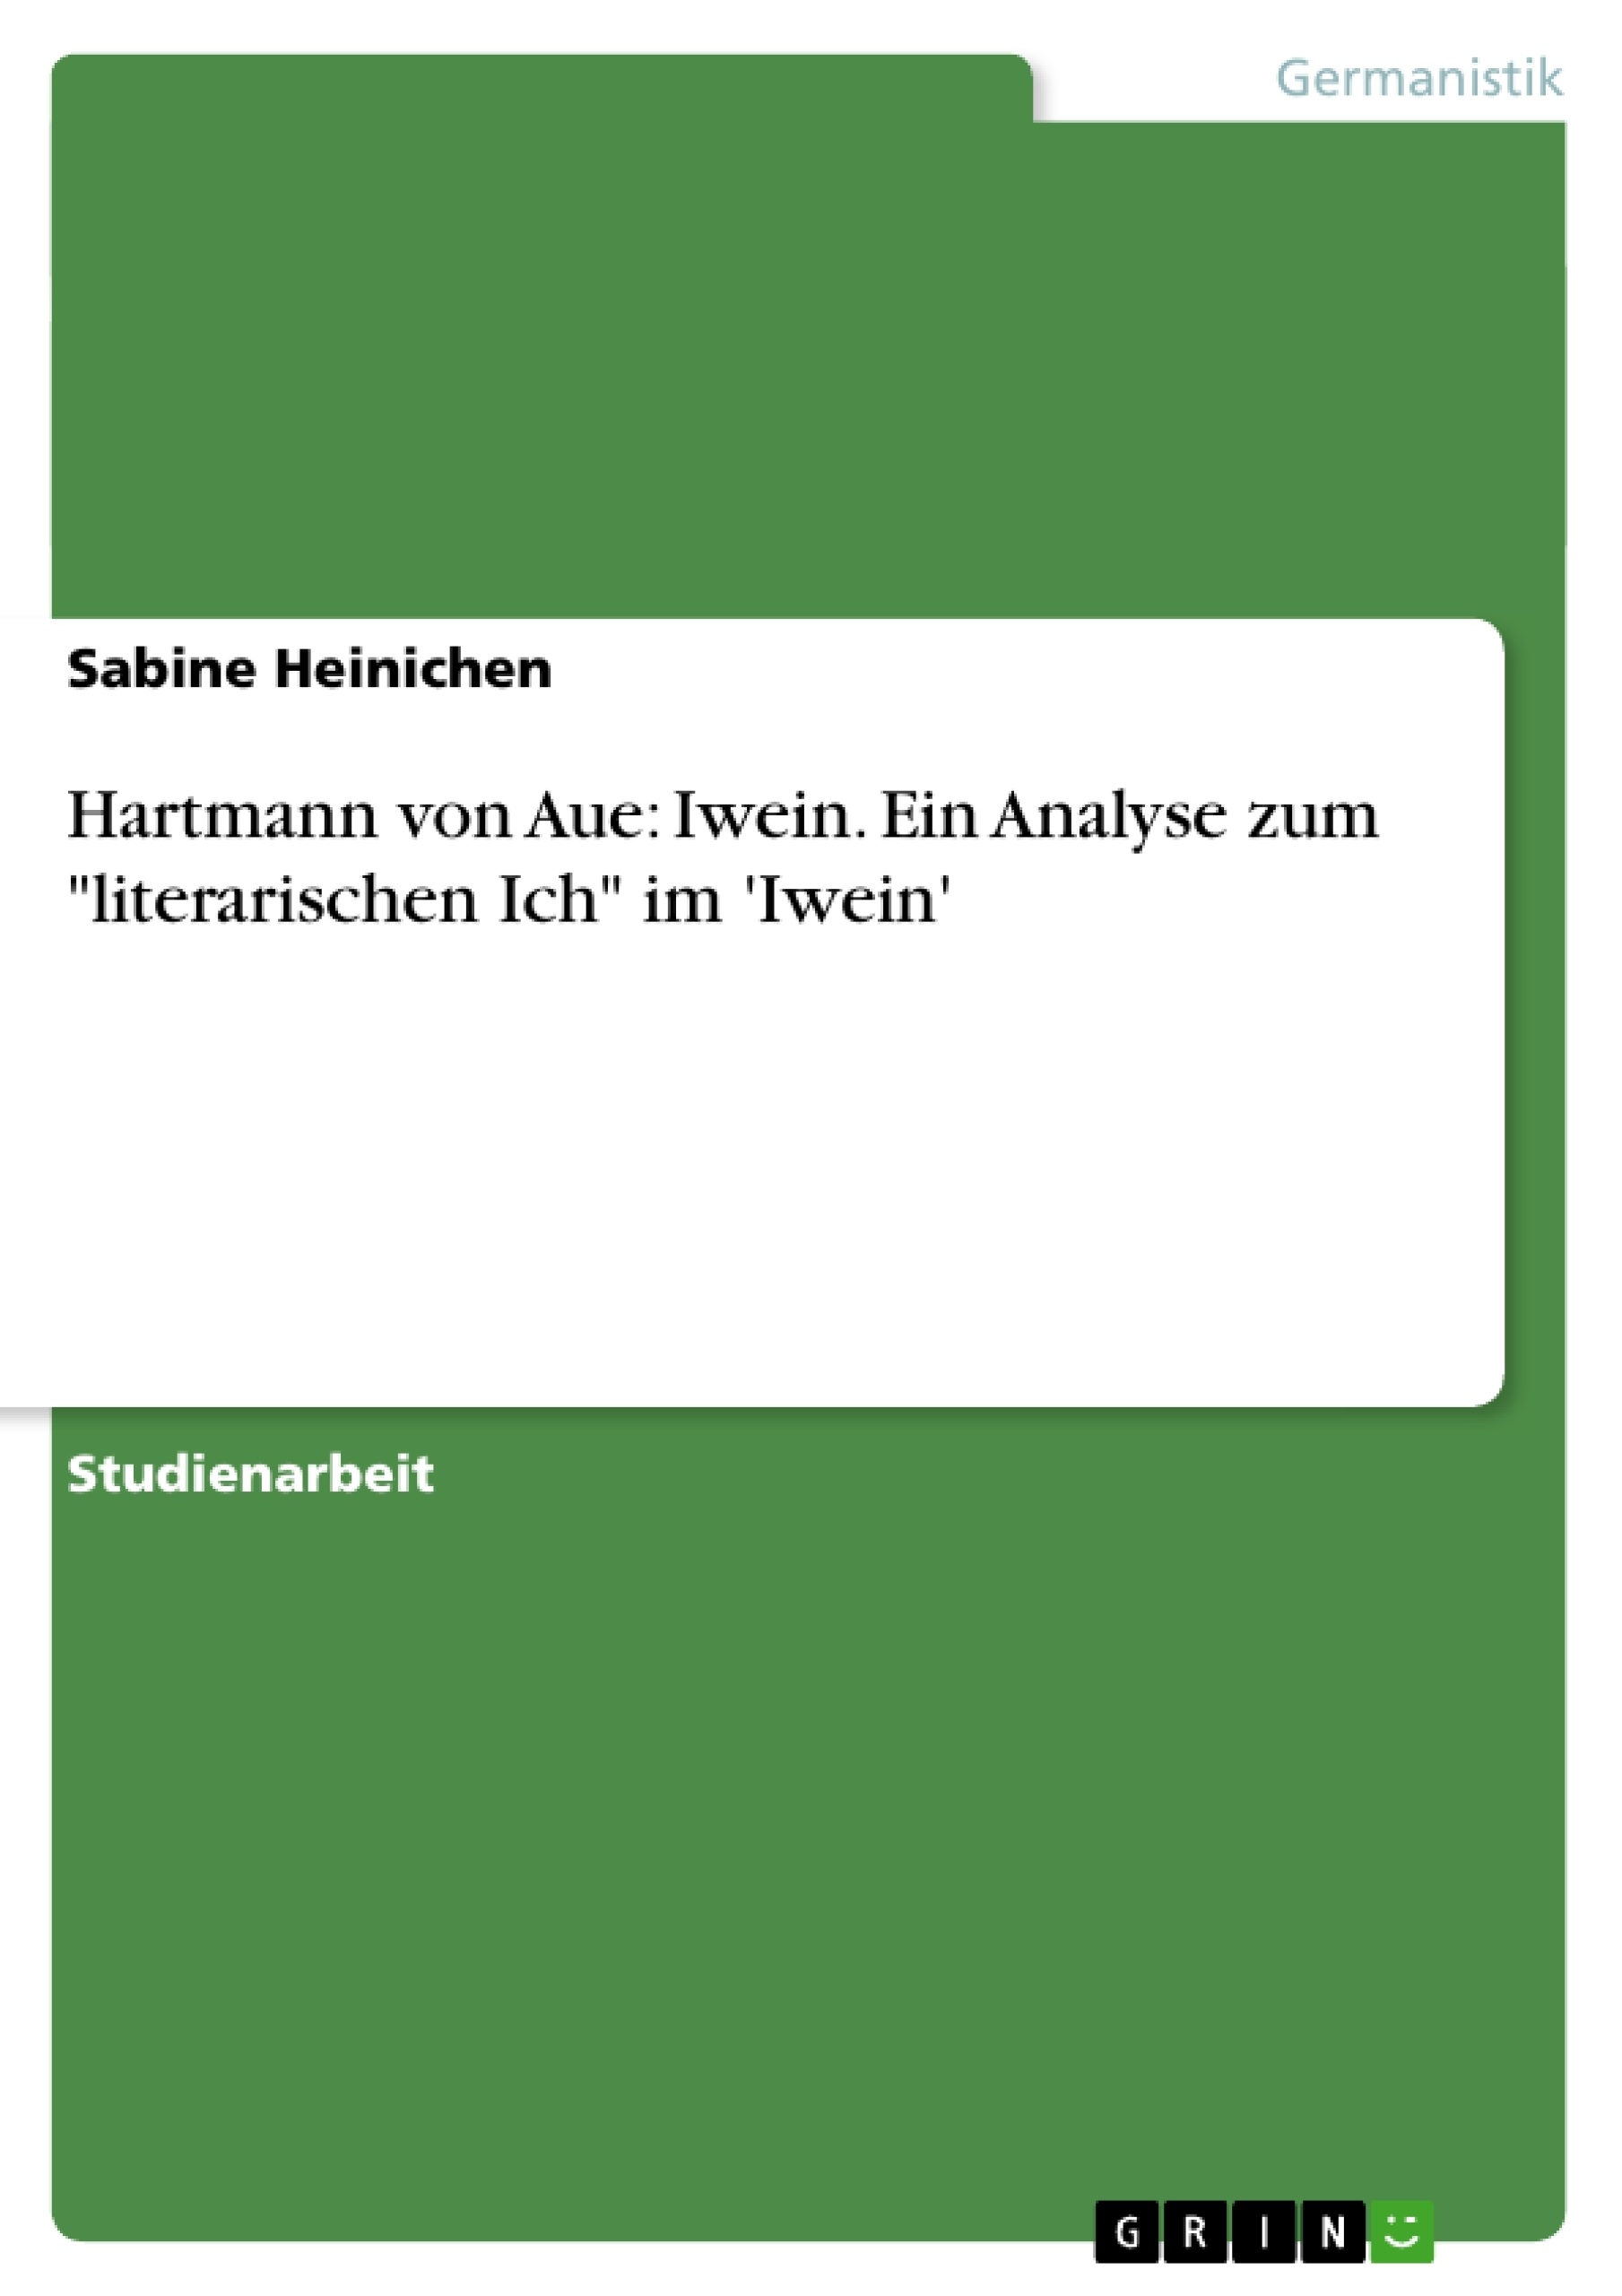 Titre: Hartmann von Aue: Iwein. Ein Analyse zum "literarischen Ich" im 'Iwein'